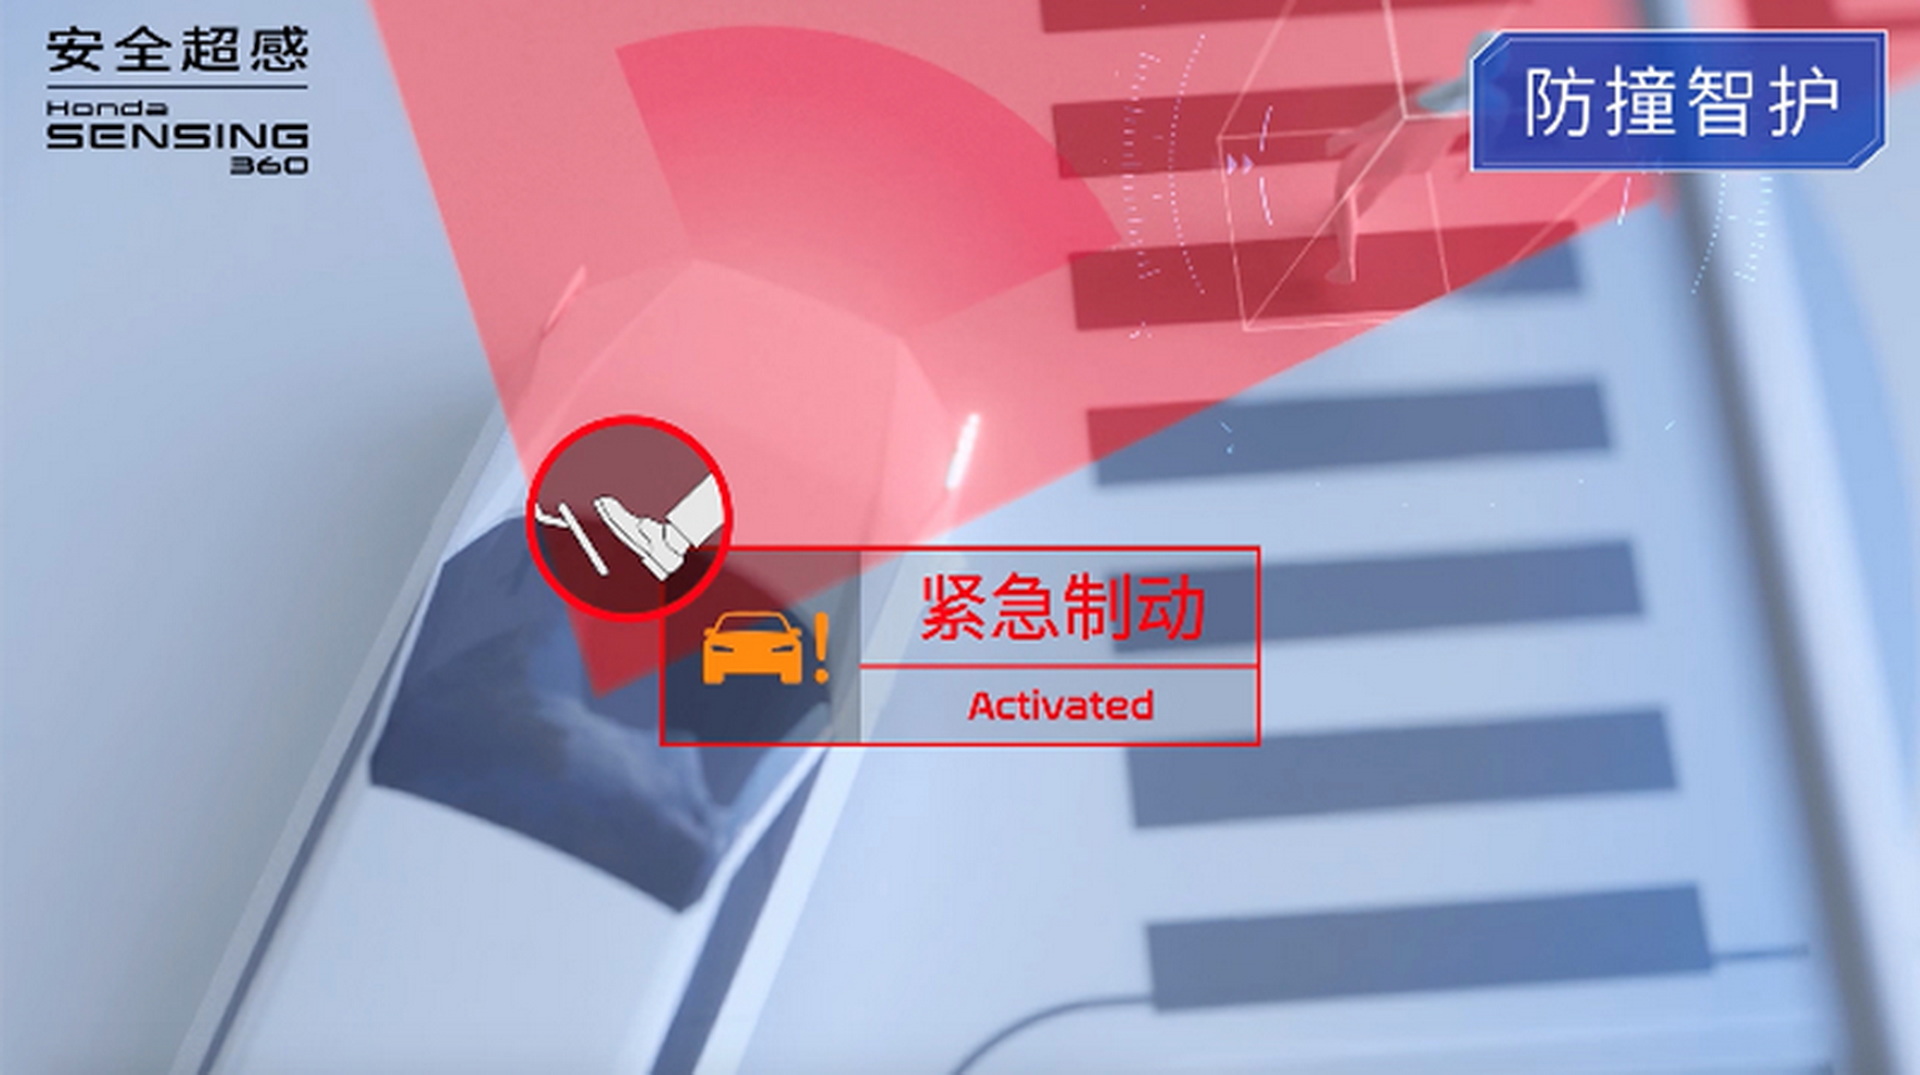 هوندا تكشف الستار عن سيارة e:N2 الاختبارية الجديدة كلياً في الصين 12